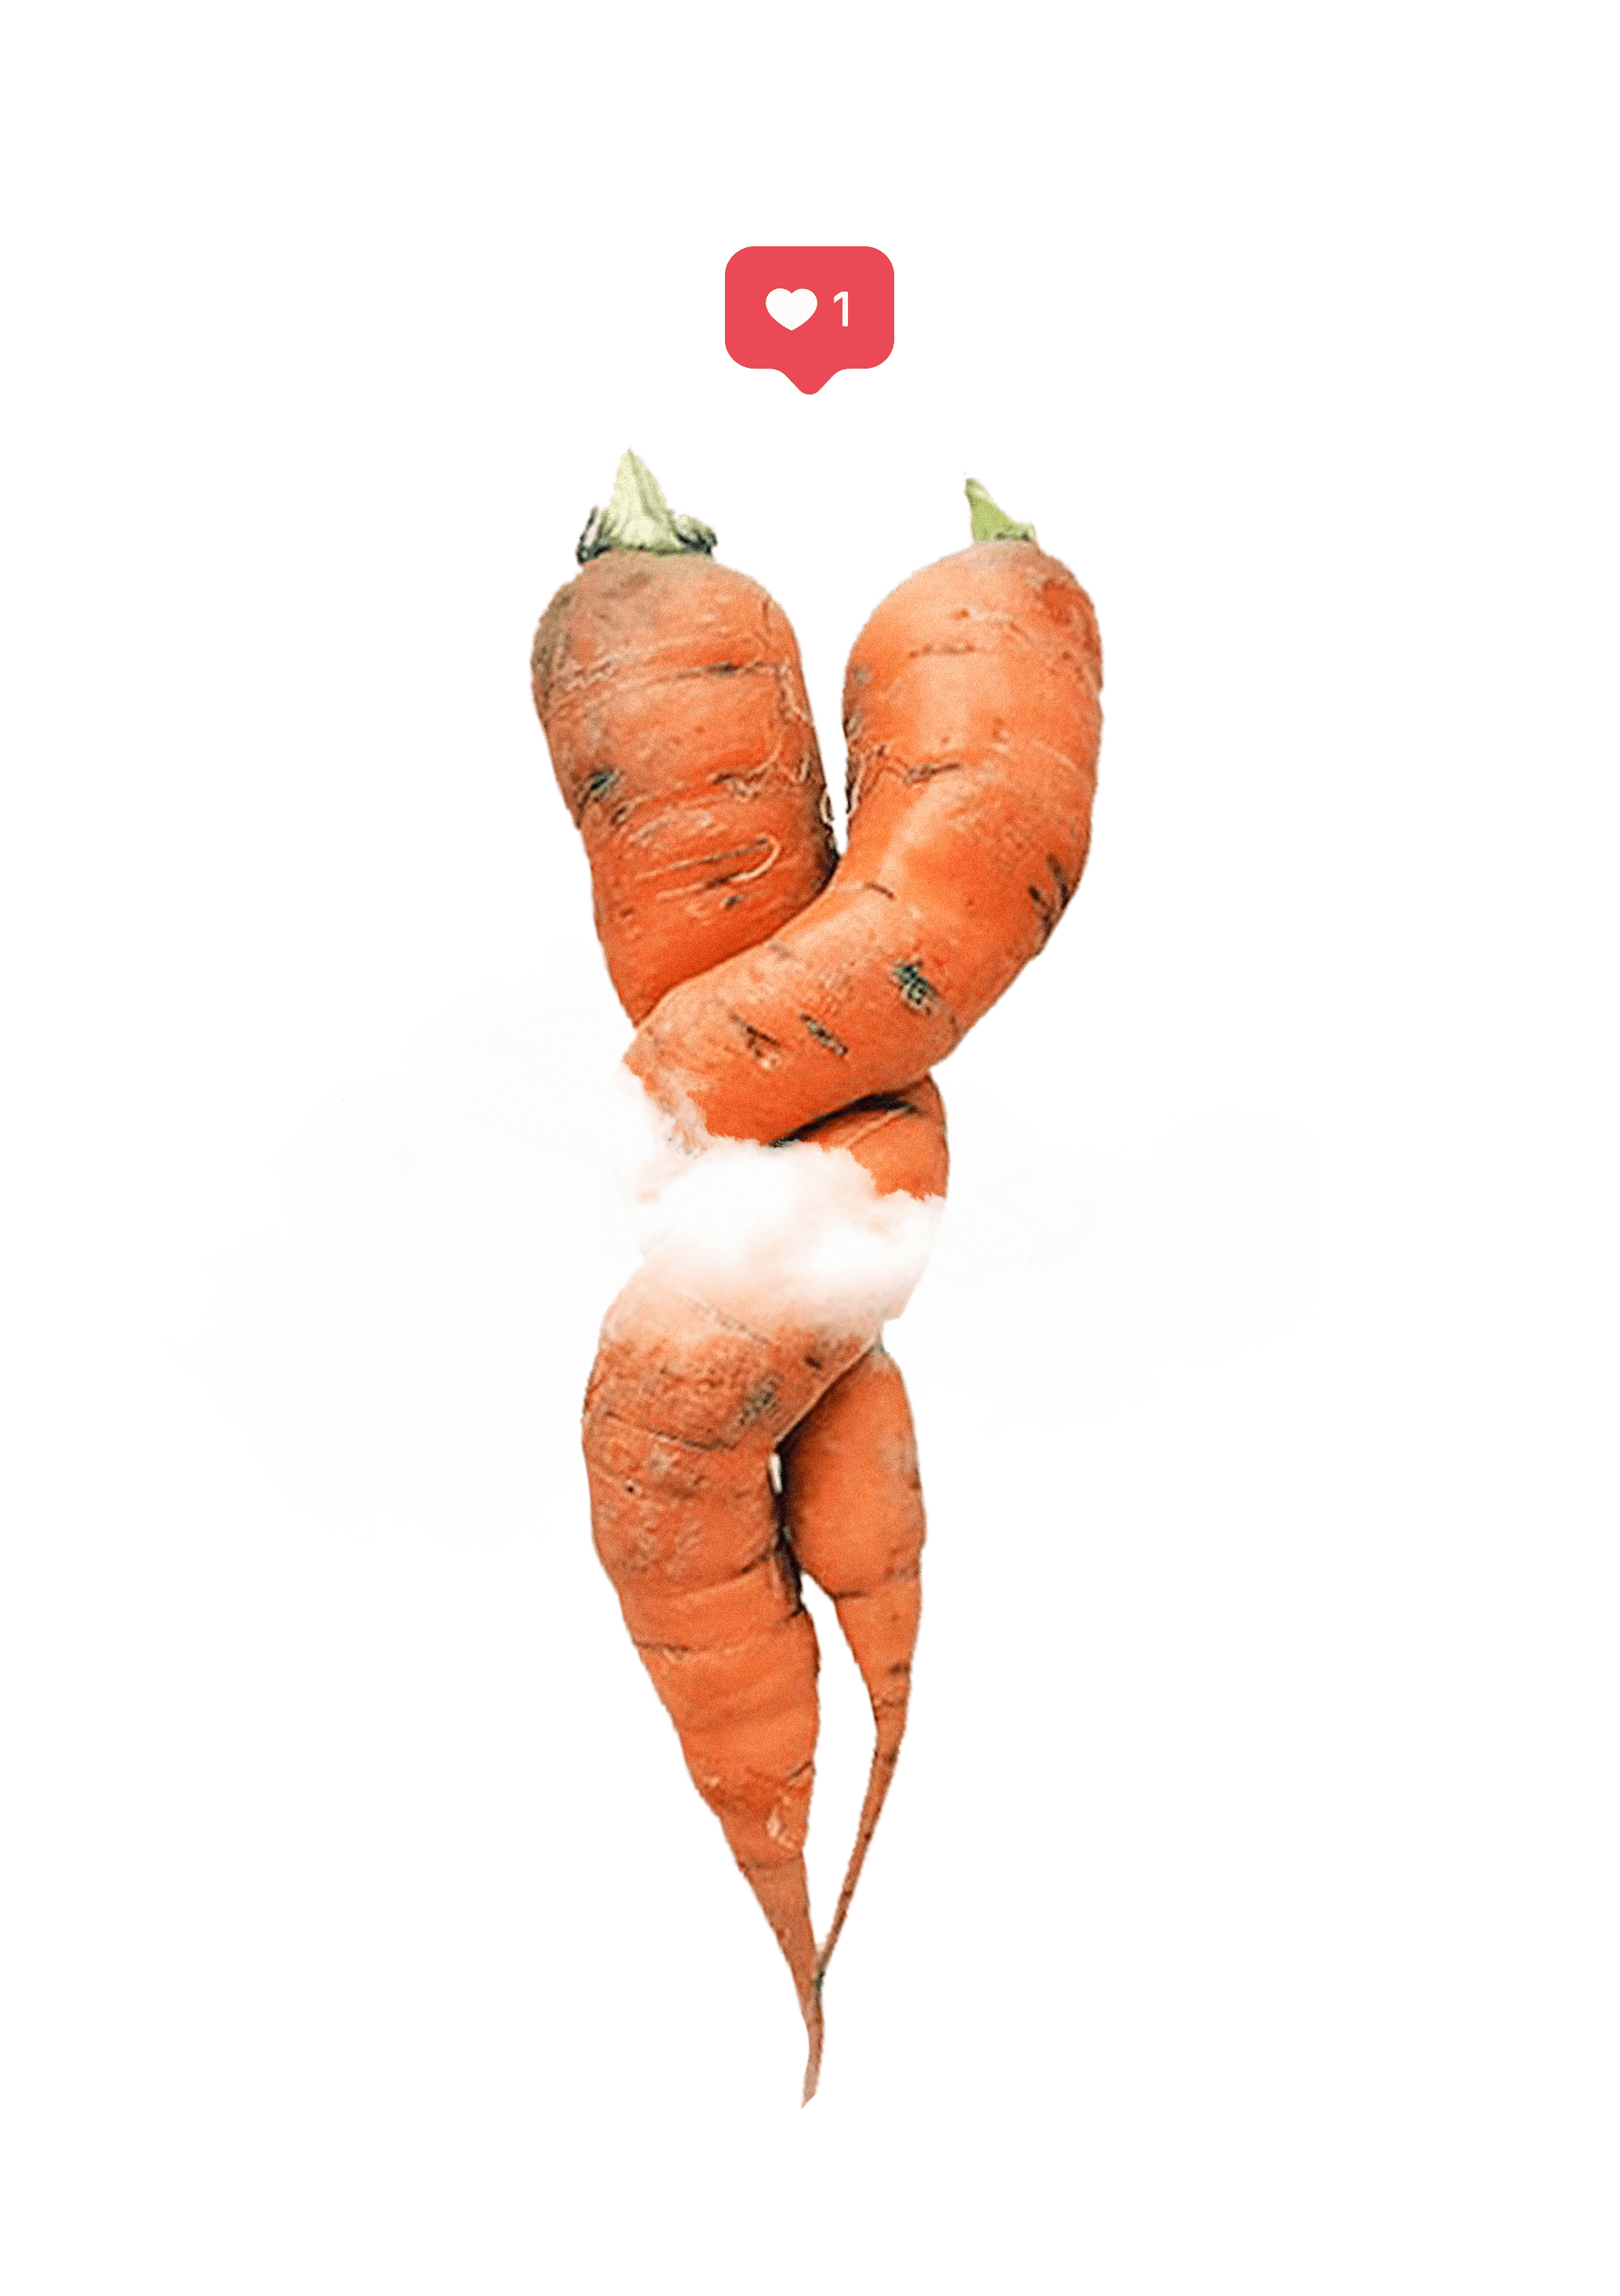 zanahoria remolona